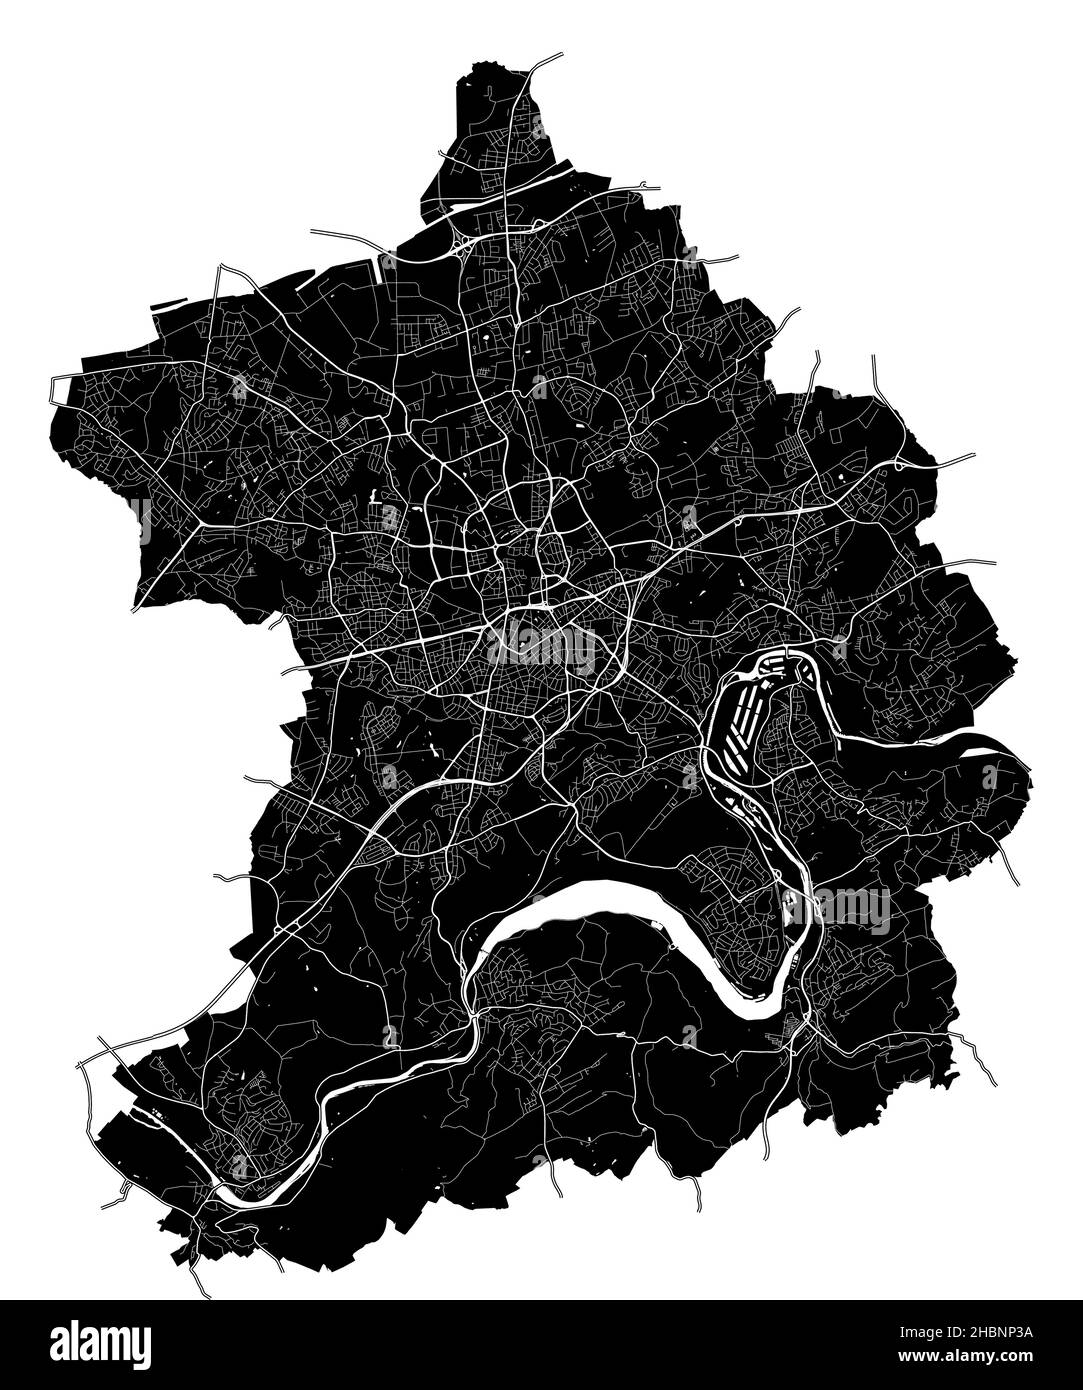 Essen, Nordrhein-Westfalen, Deutschland, Deutschland, hochauflösende Vektorkarte mit Stadtgrenzen und bearbeitbaren Pfaden. Der Stadtplan wurde mit whit gezeichnet Stock Vektor